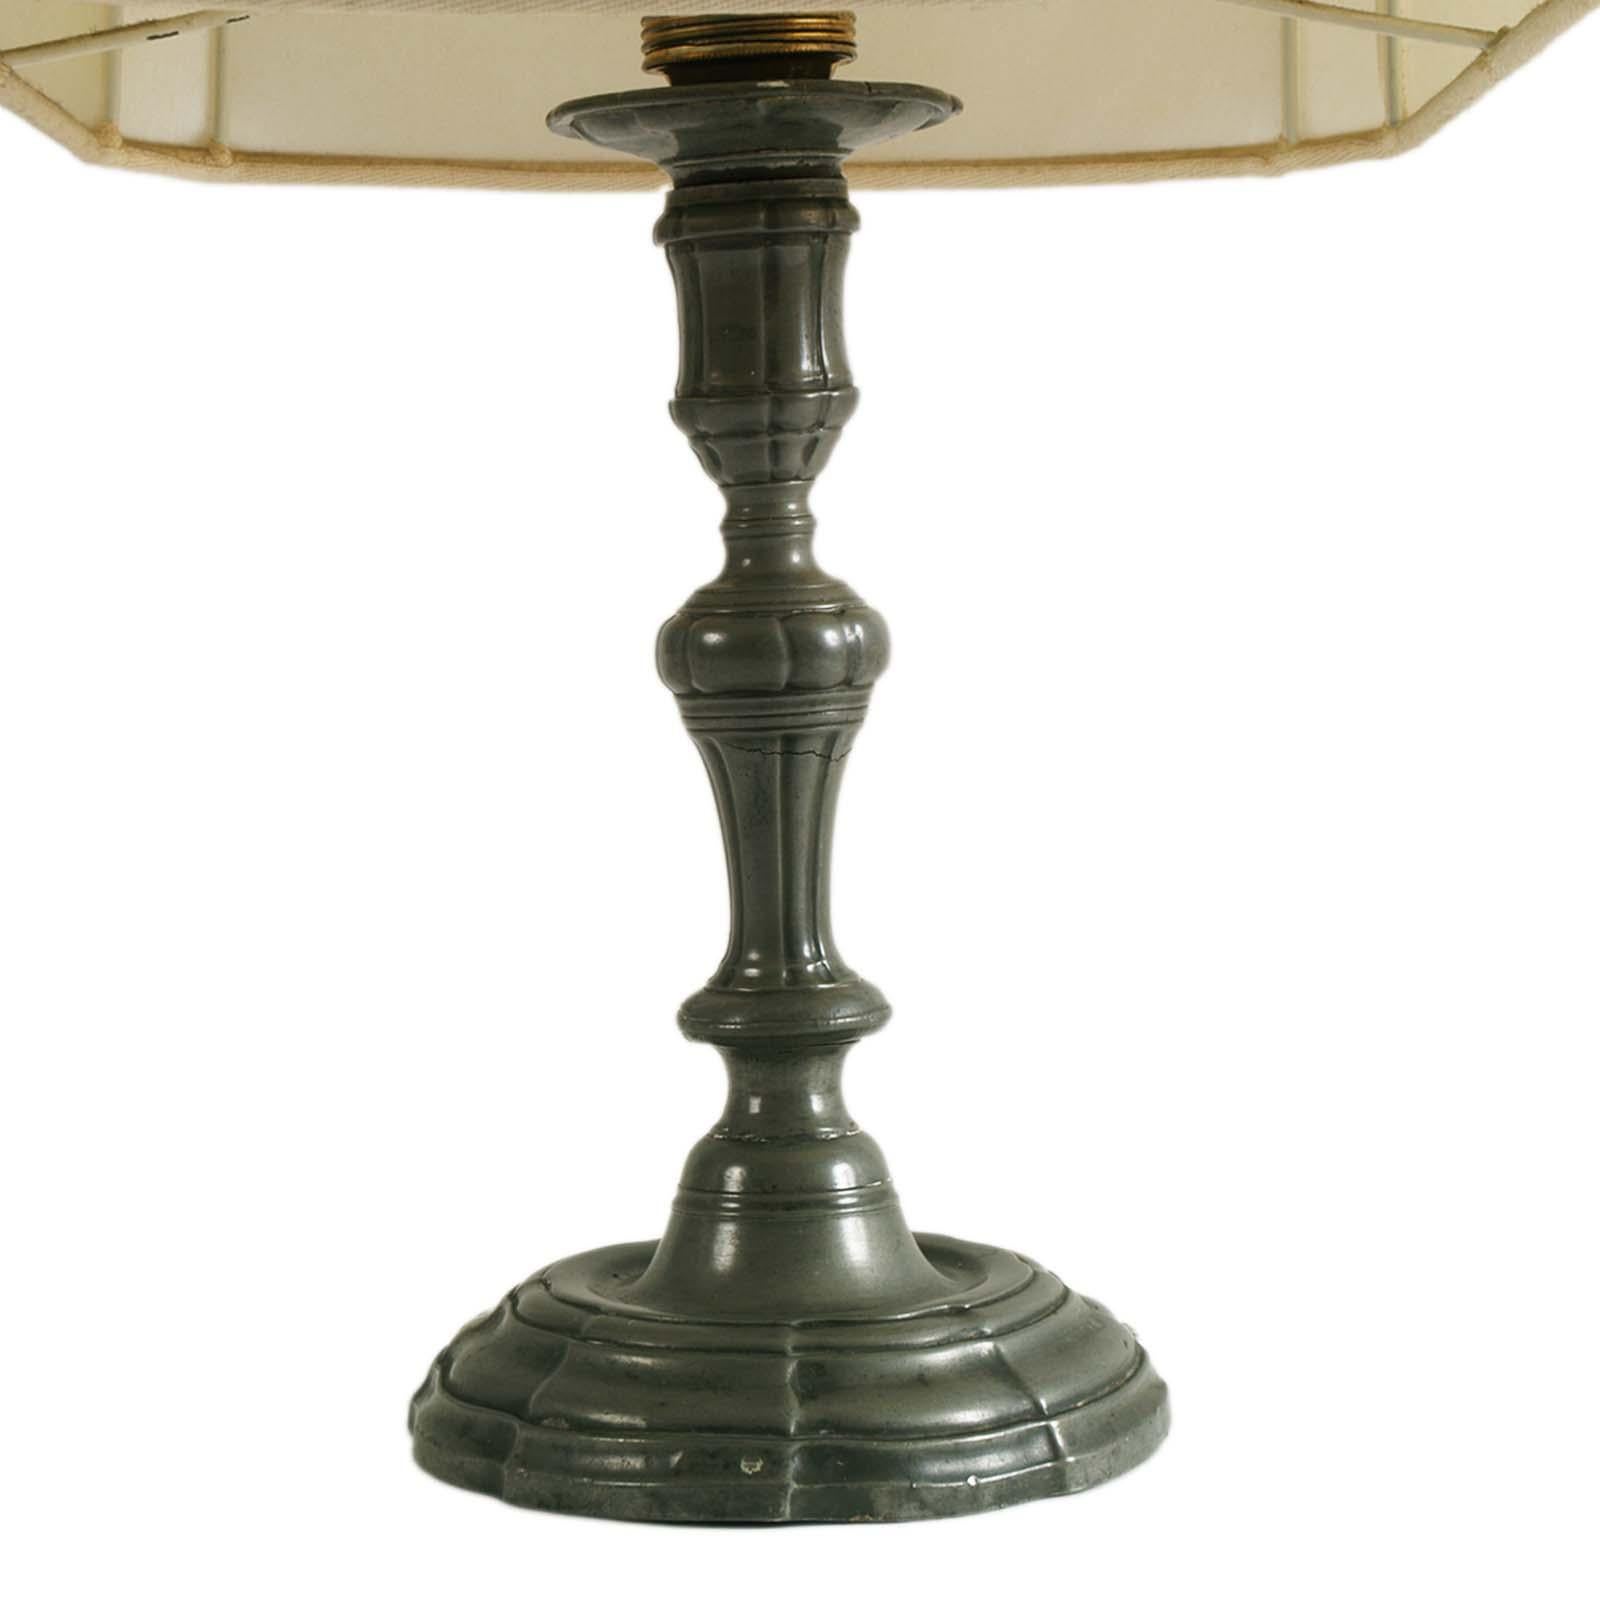 Lampe de table ancienne des années 1930 en étain patiné, style baroque, Fonderia d'Arte Adriano Vallin, attribuée.
Hauteur étain patiné cm. 30.